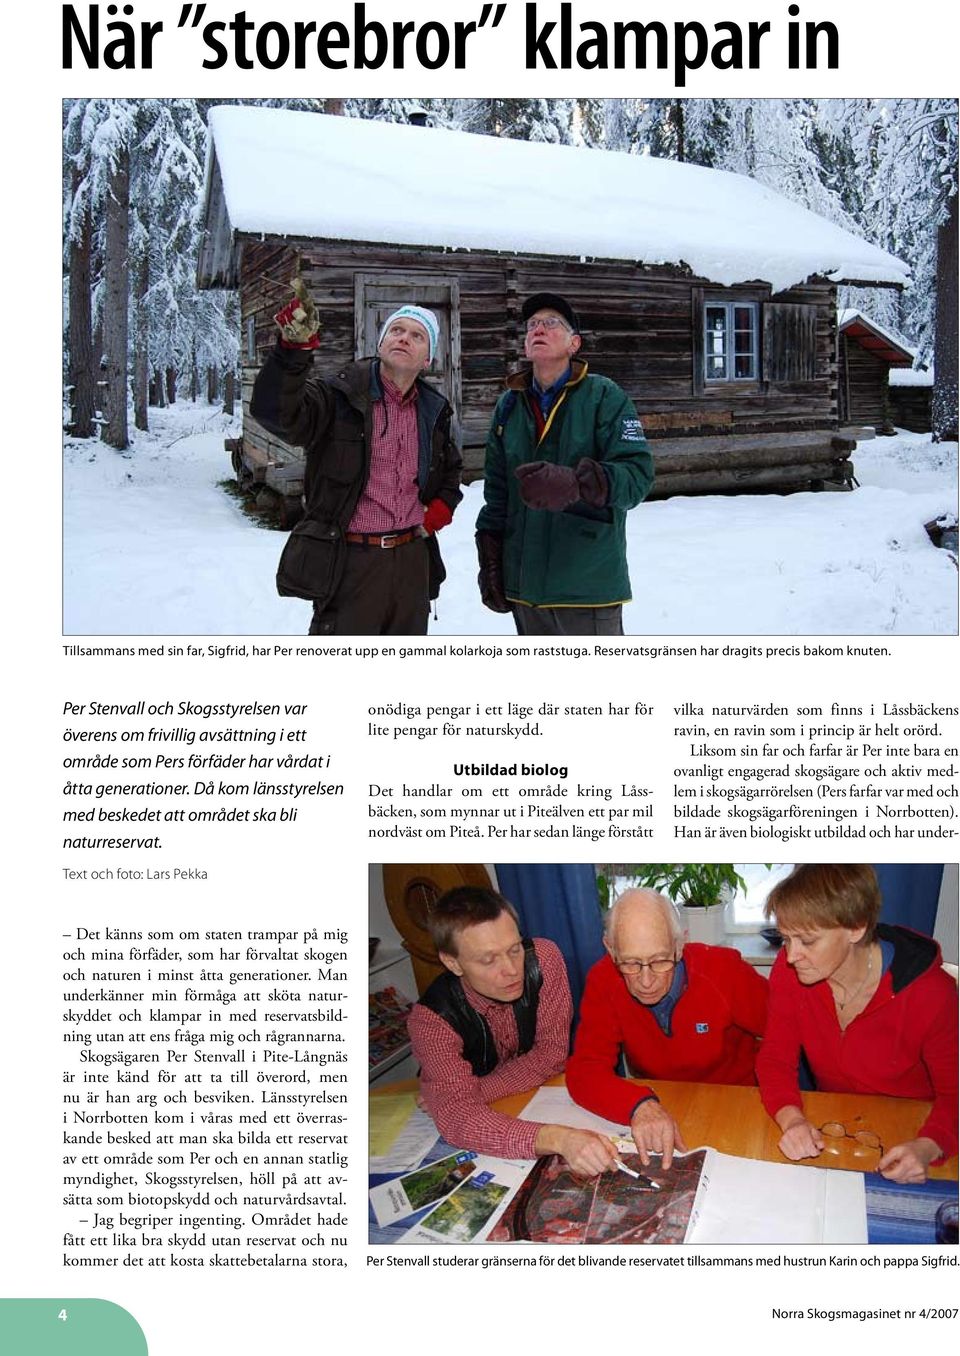 Text och foto: Lars Pekka onödiga pengar i ett läge där staten har för lite pengar för naturskydd.